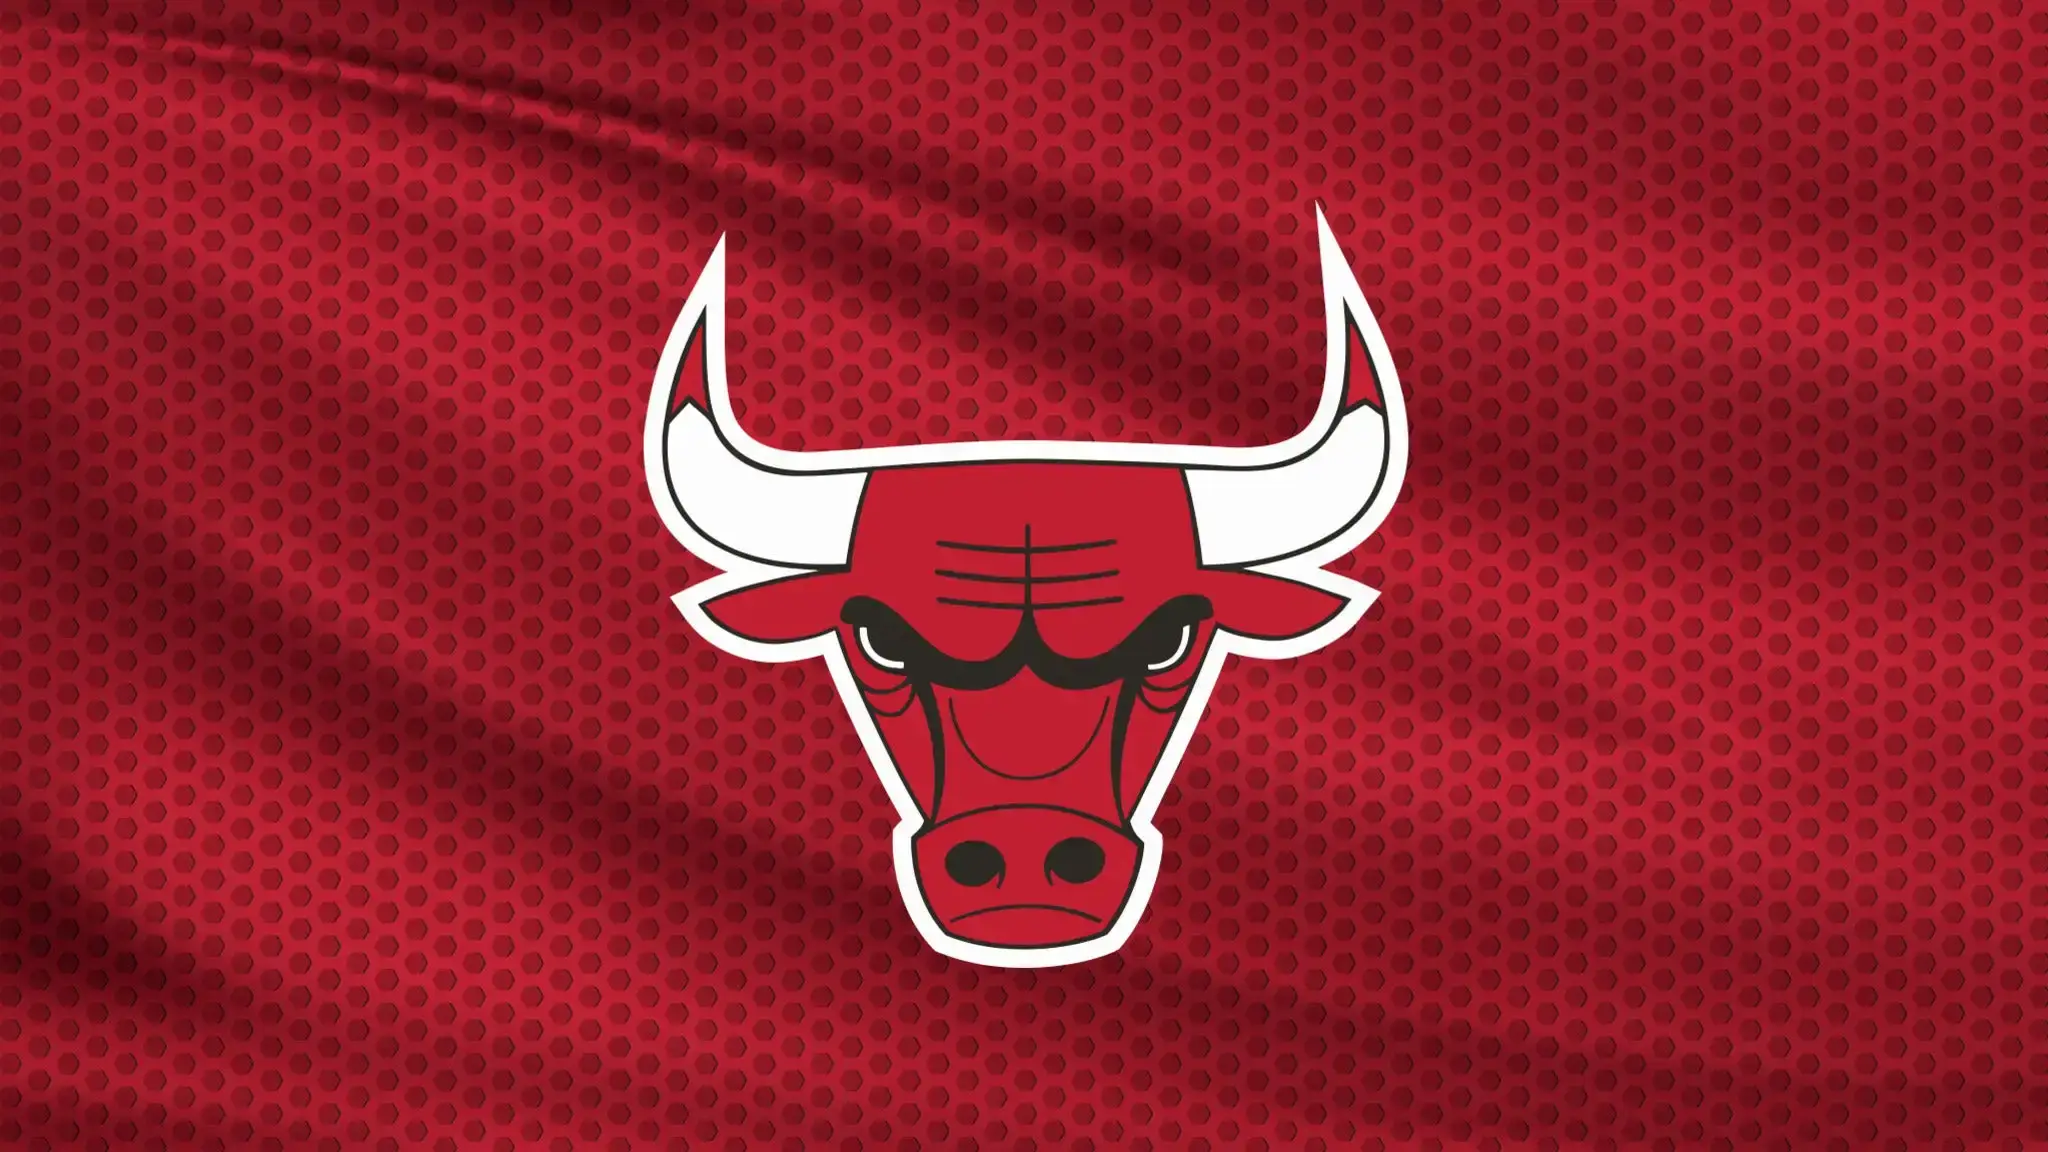 Chicago Bulls е първият спортен отбор пускащ NFT колекция на Coinbase